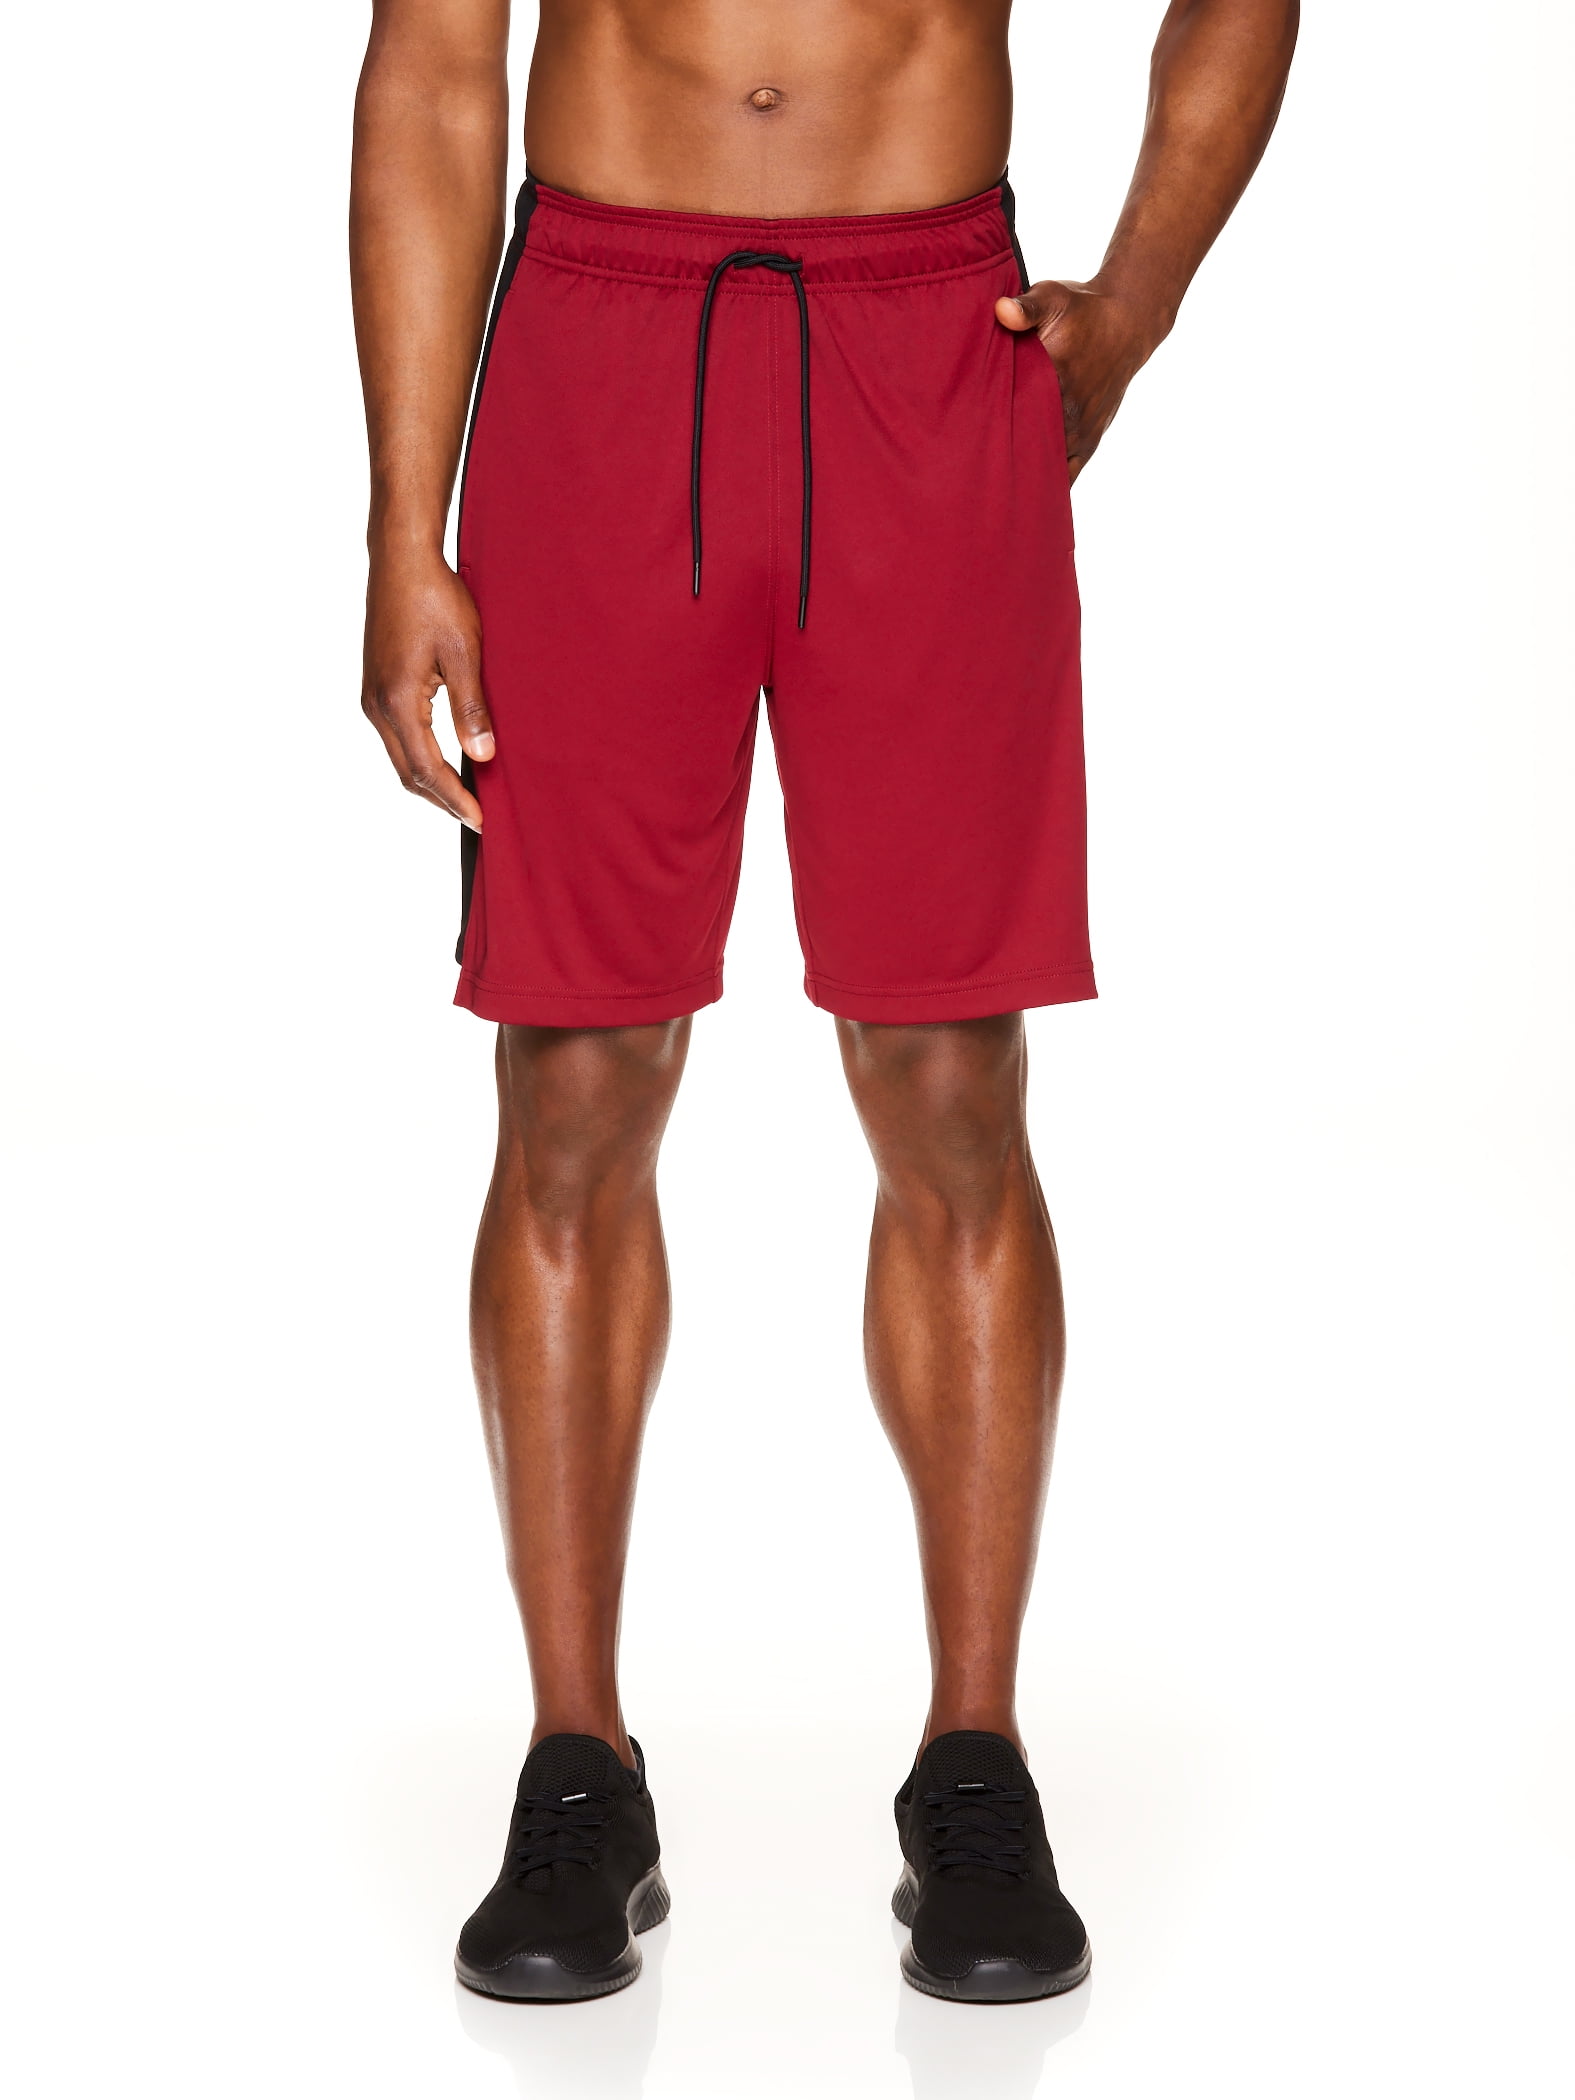 Reebok Men's and Big Men's Active Knit Amped Training Shorts - Walmart.com